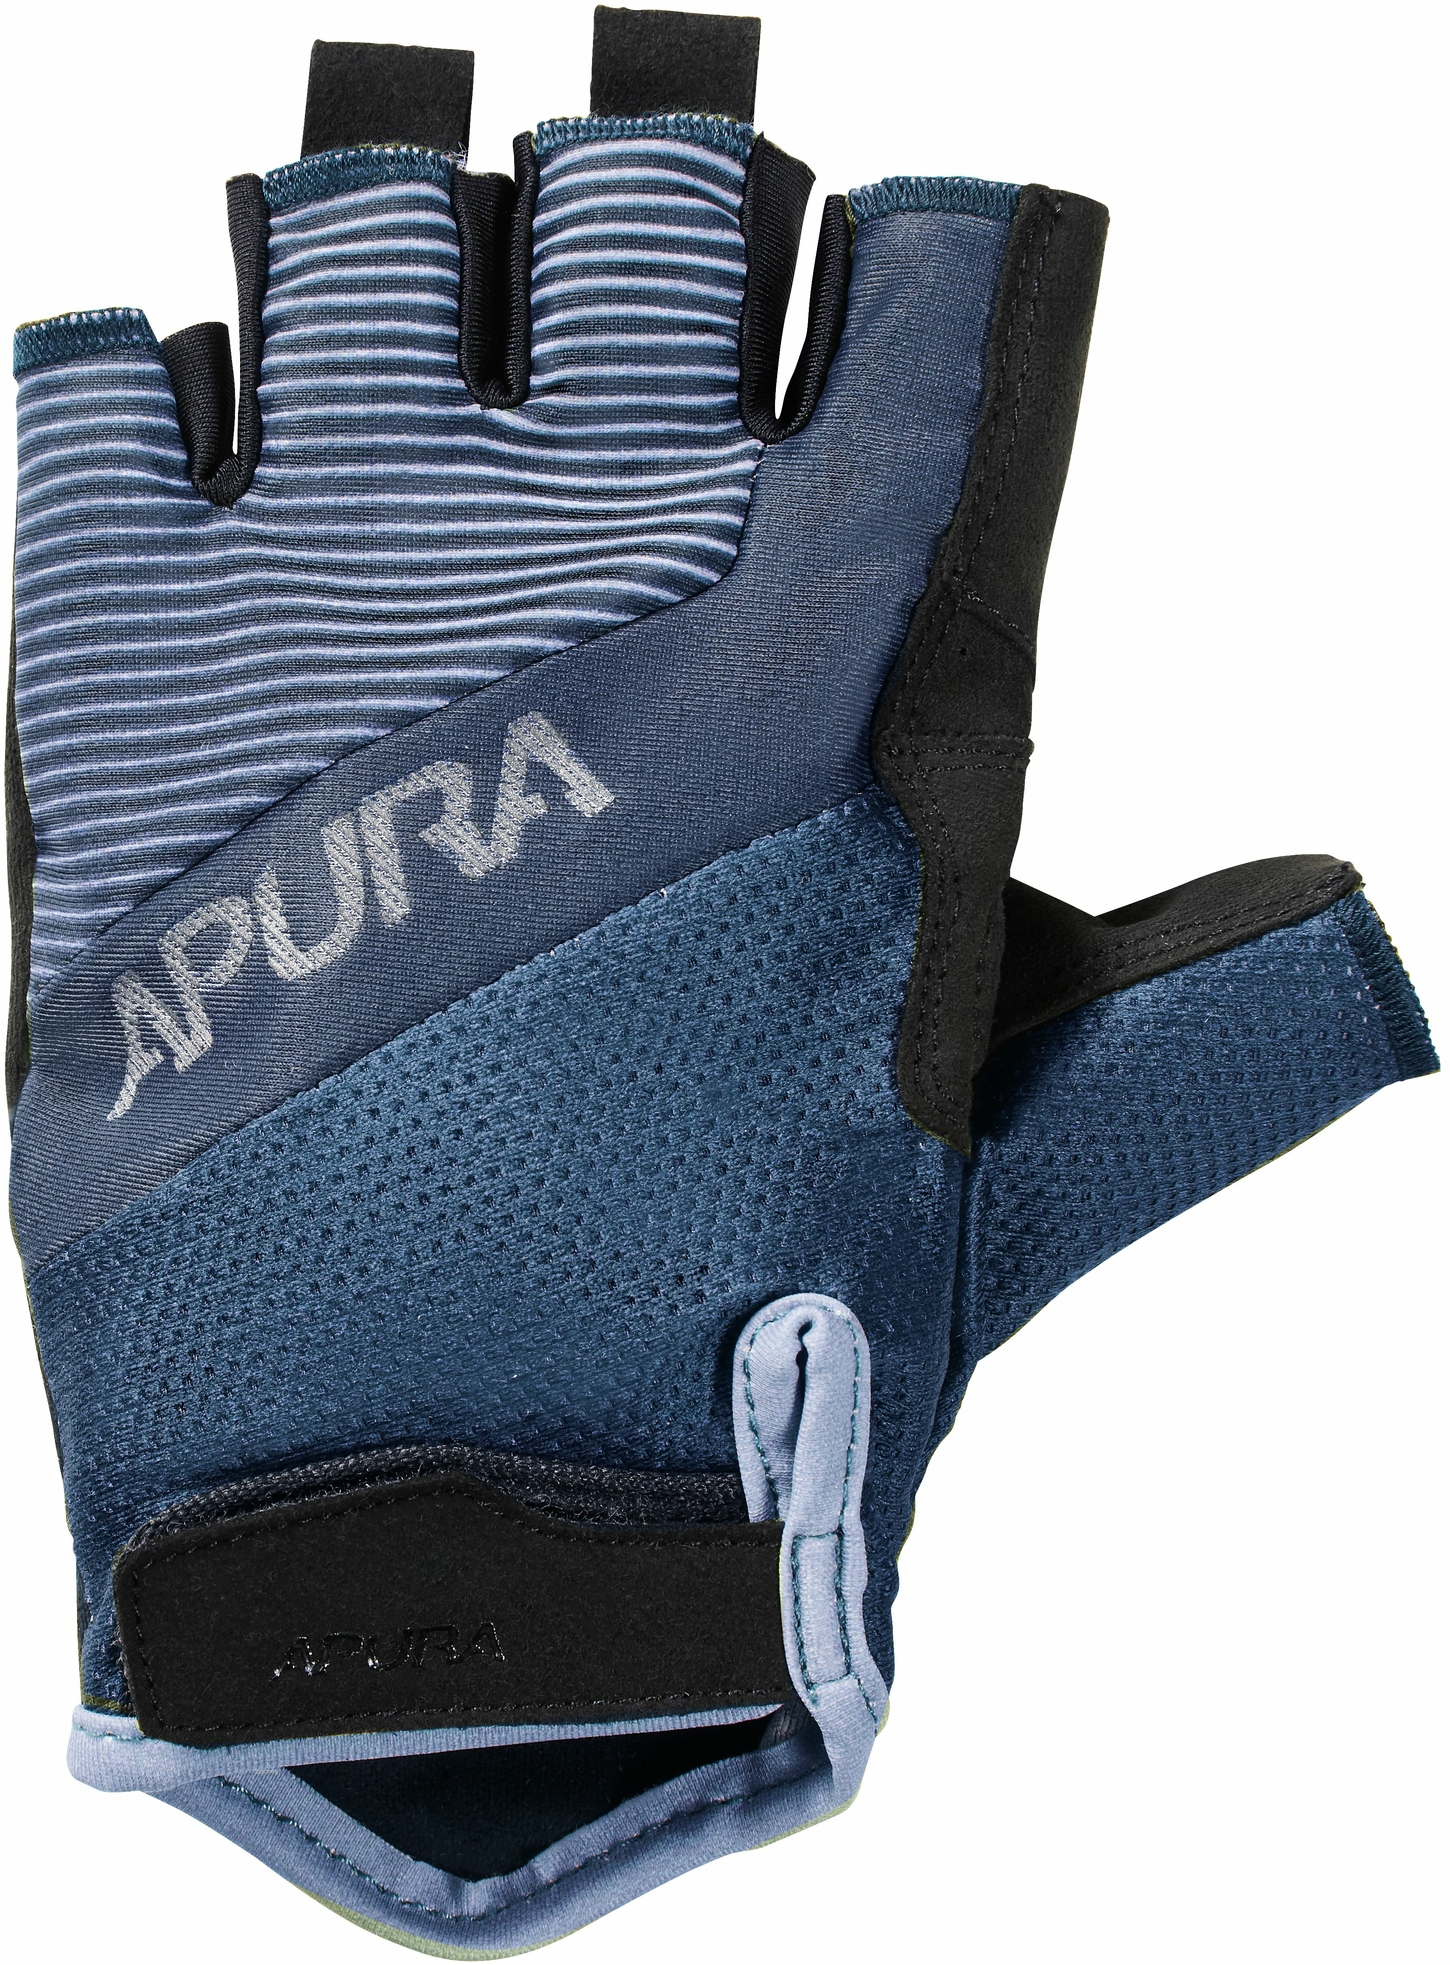 Bekleidung/Handschuhe: Apura  Handschuh Kurzfinger Explore S Blau